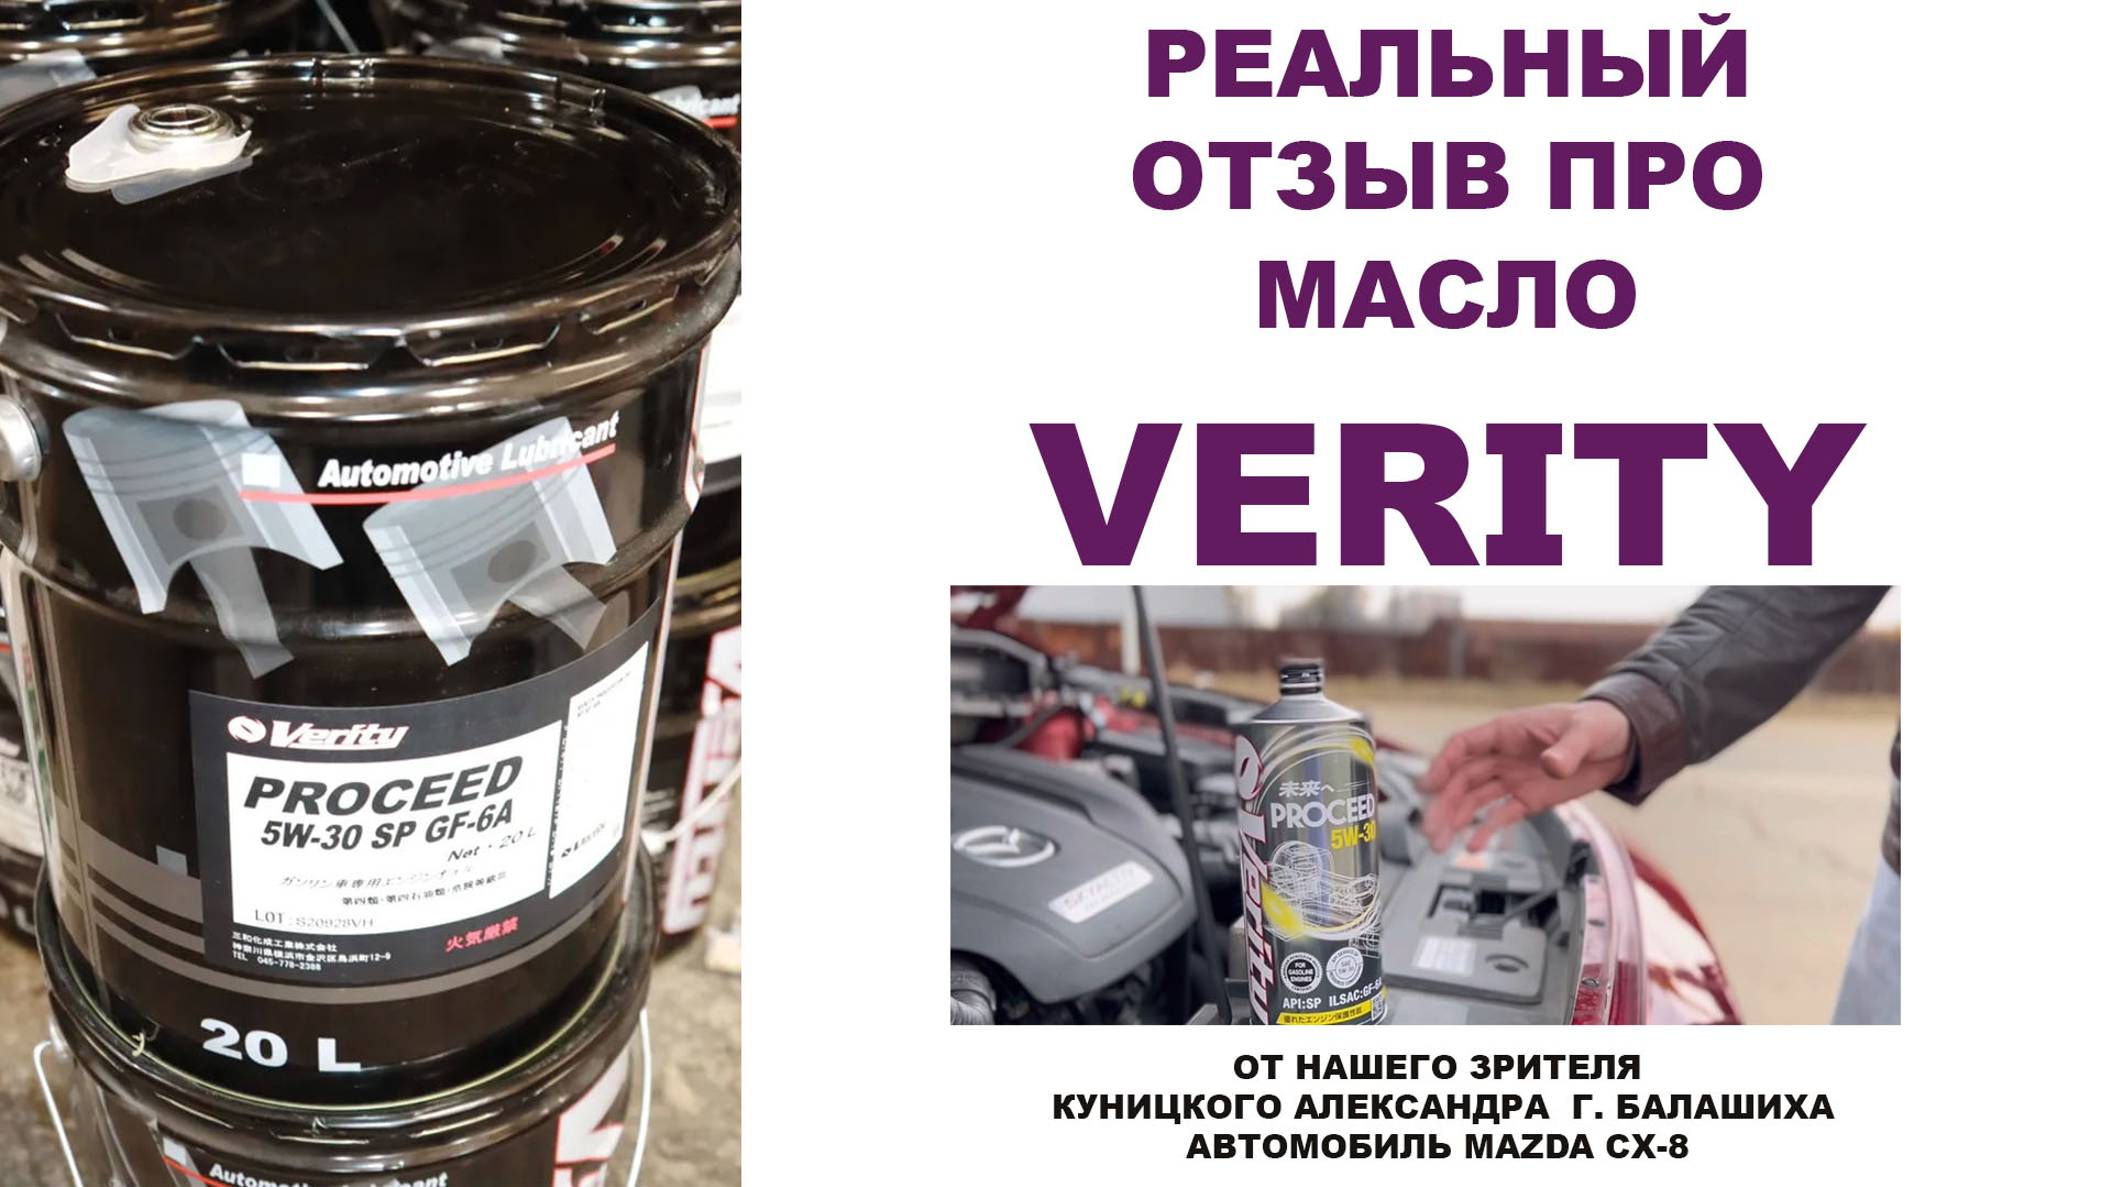 Реальный отзыв про моторное масло VERITY от нашего зрителя Куницкого Александра  г. Балашиха